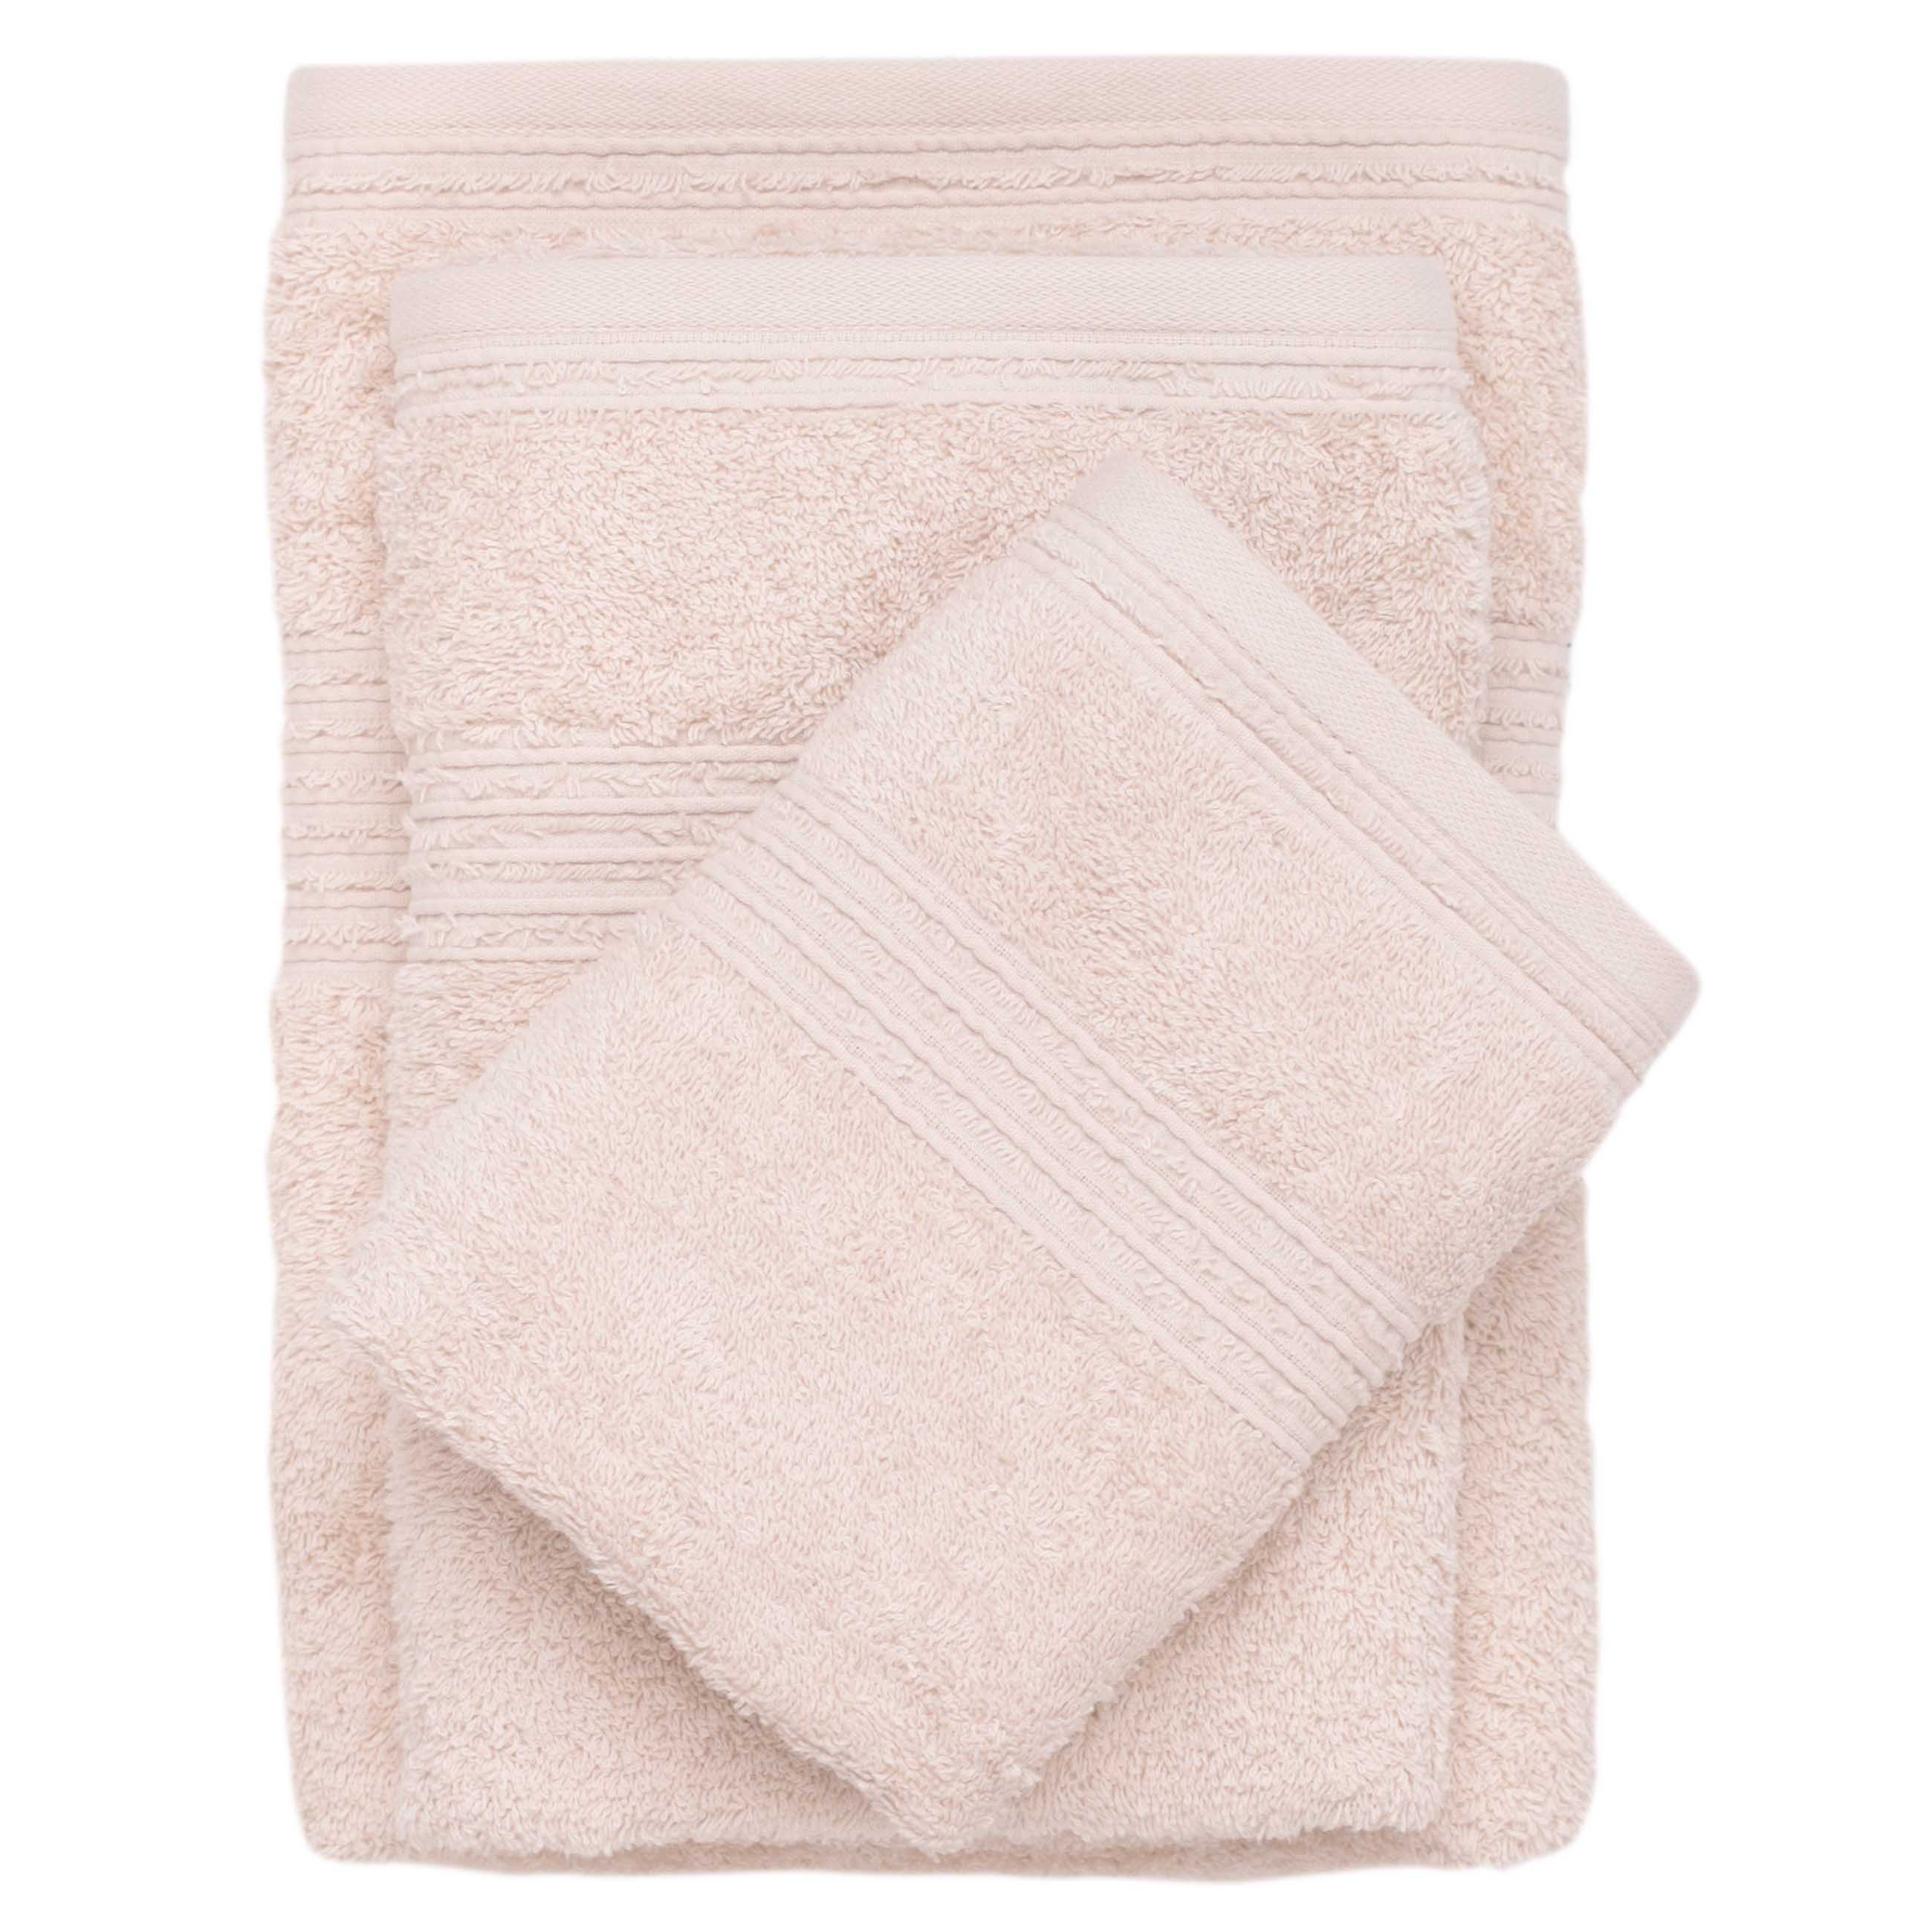 Towel set, 40x60 / 50x90 / 70x140 cm, 3 pcs, cotton, beige, Natural cotton изображение № 2